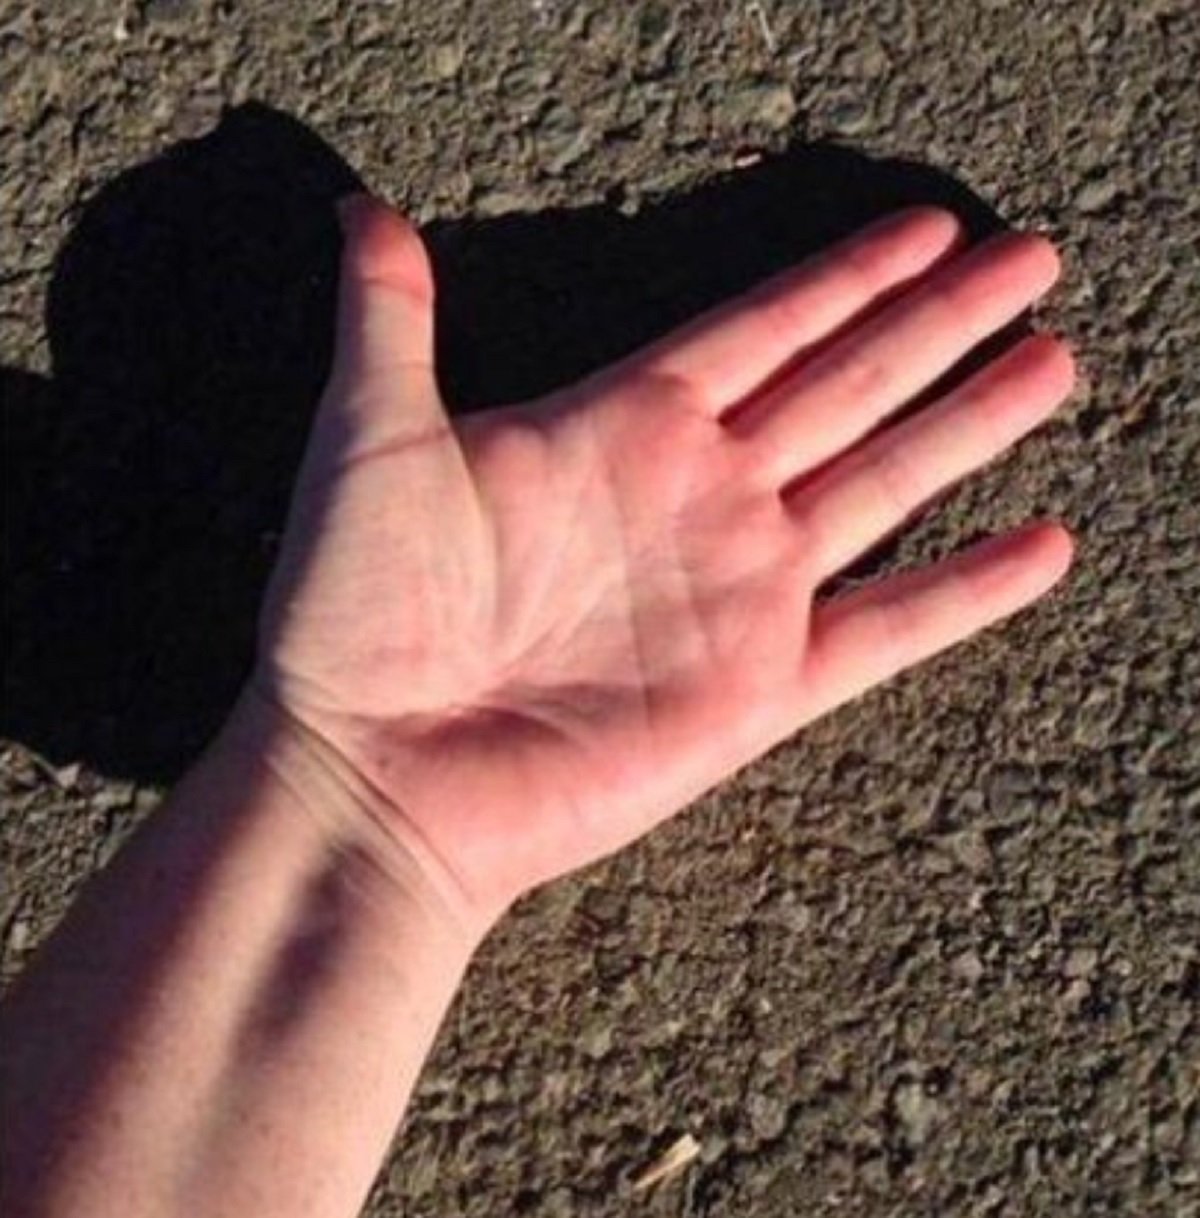 La regla dels cinc segons consisteix en posar la mà al revés sobre l'asfalt / Foto: Guàrdia Civil